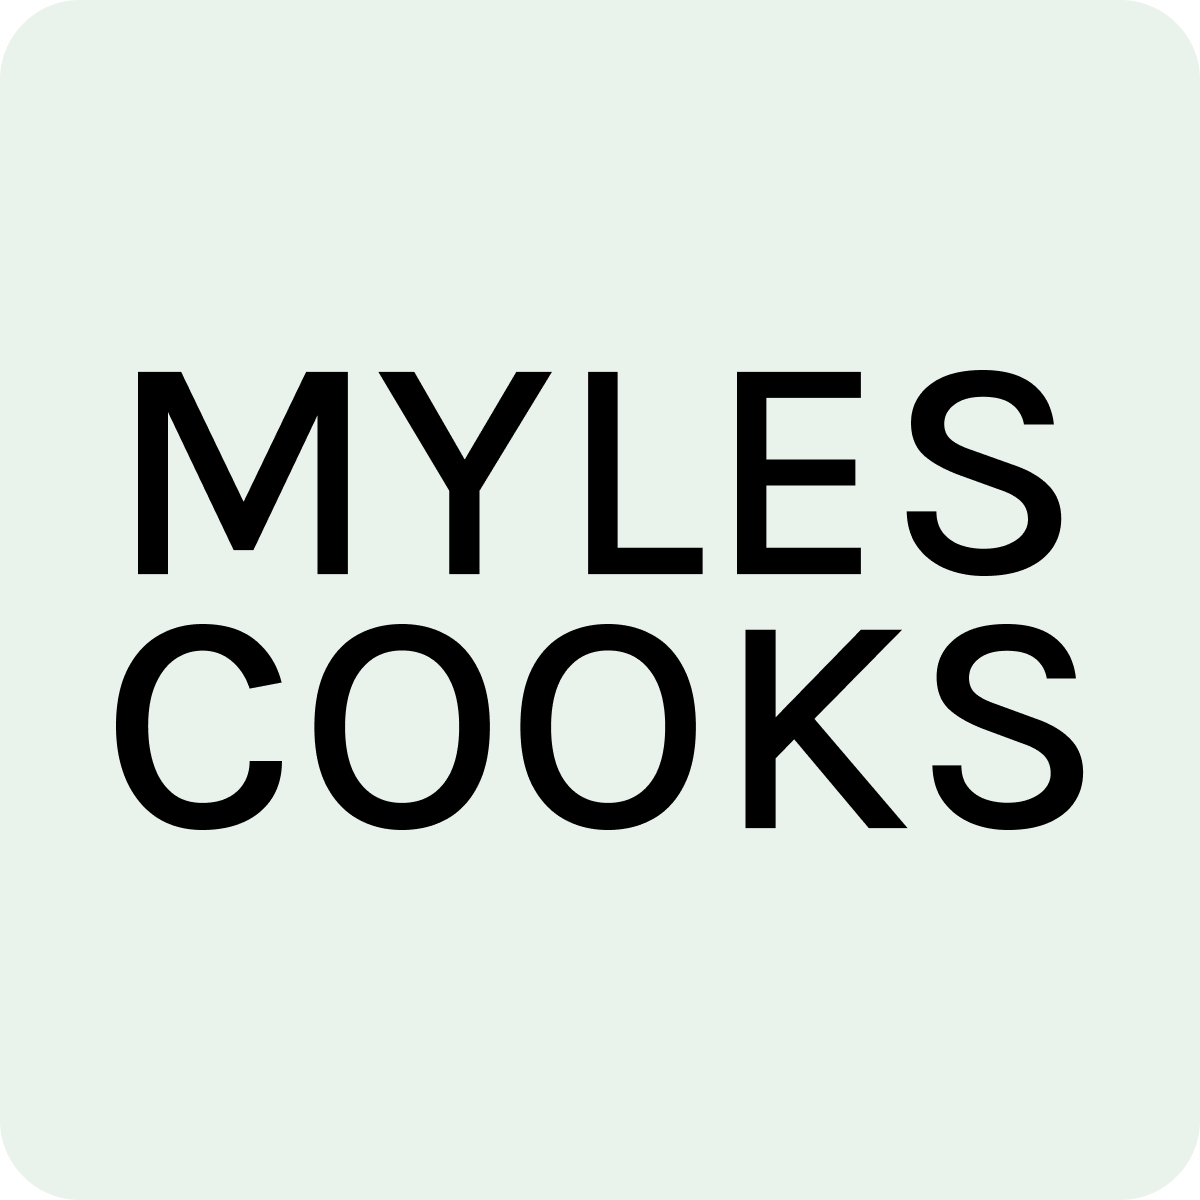 MYLES COOKS